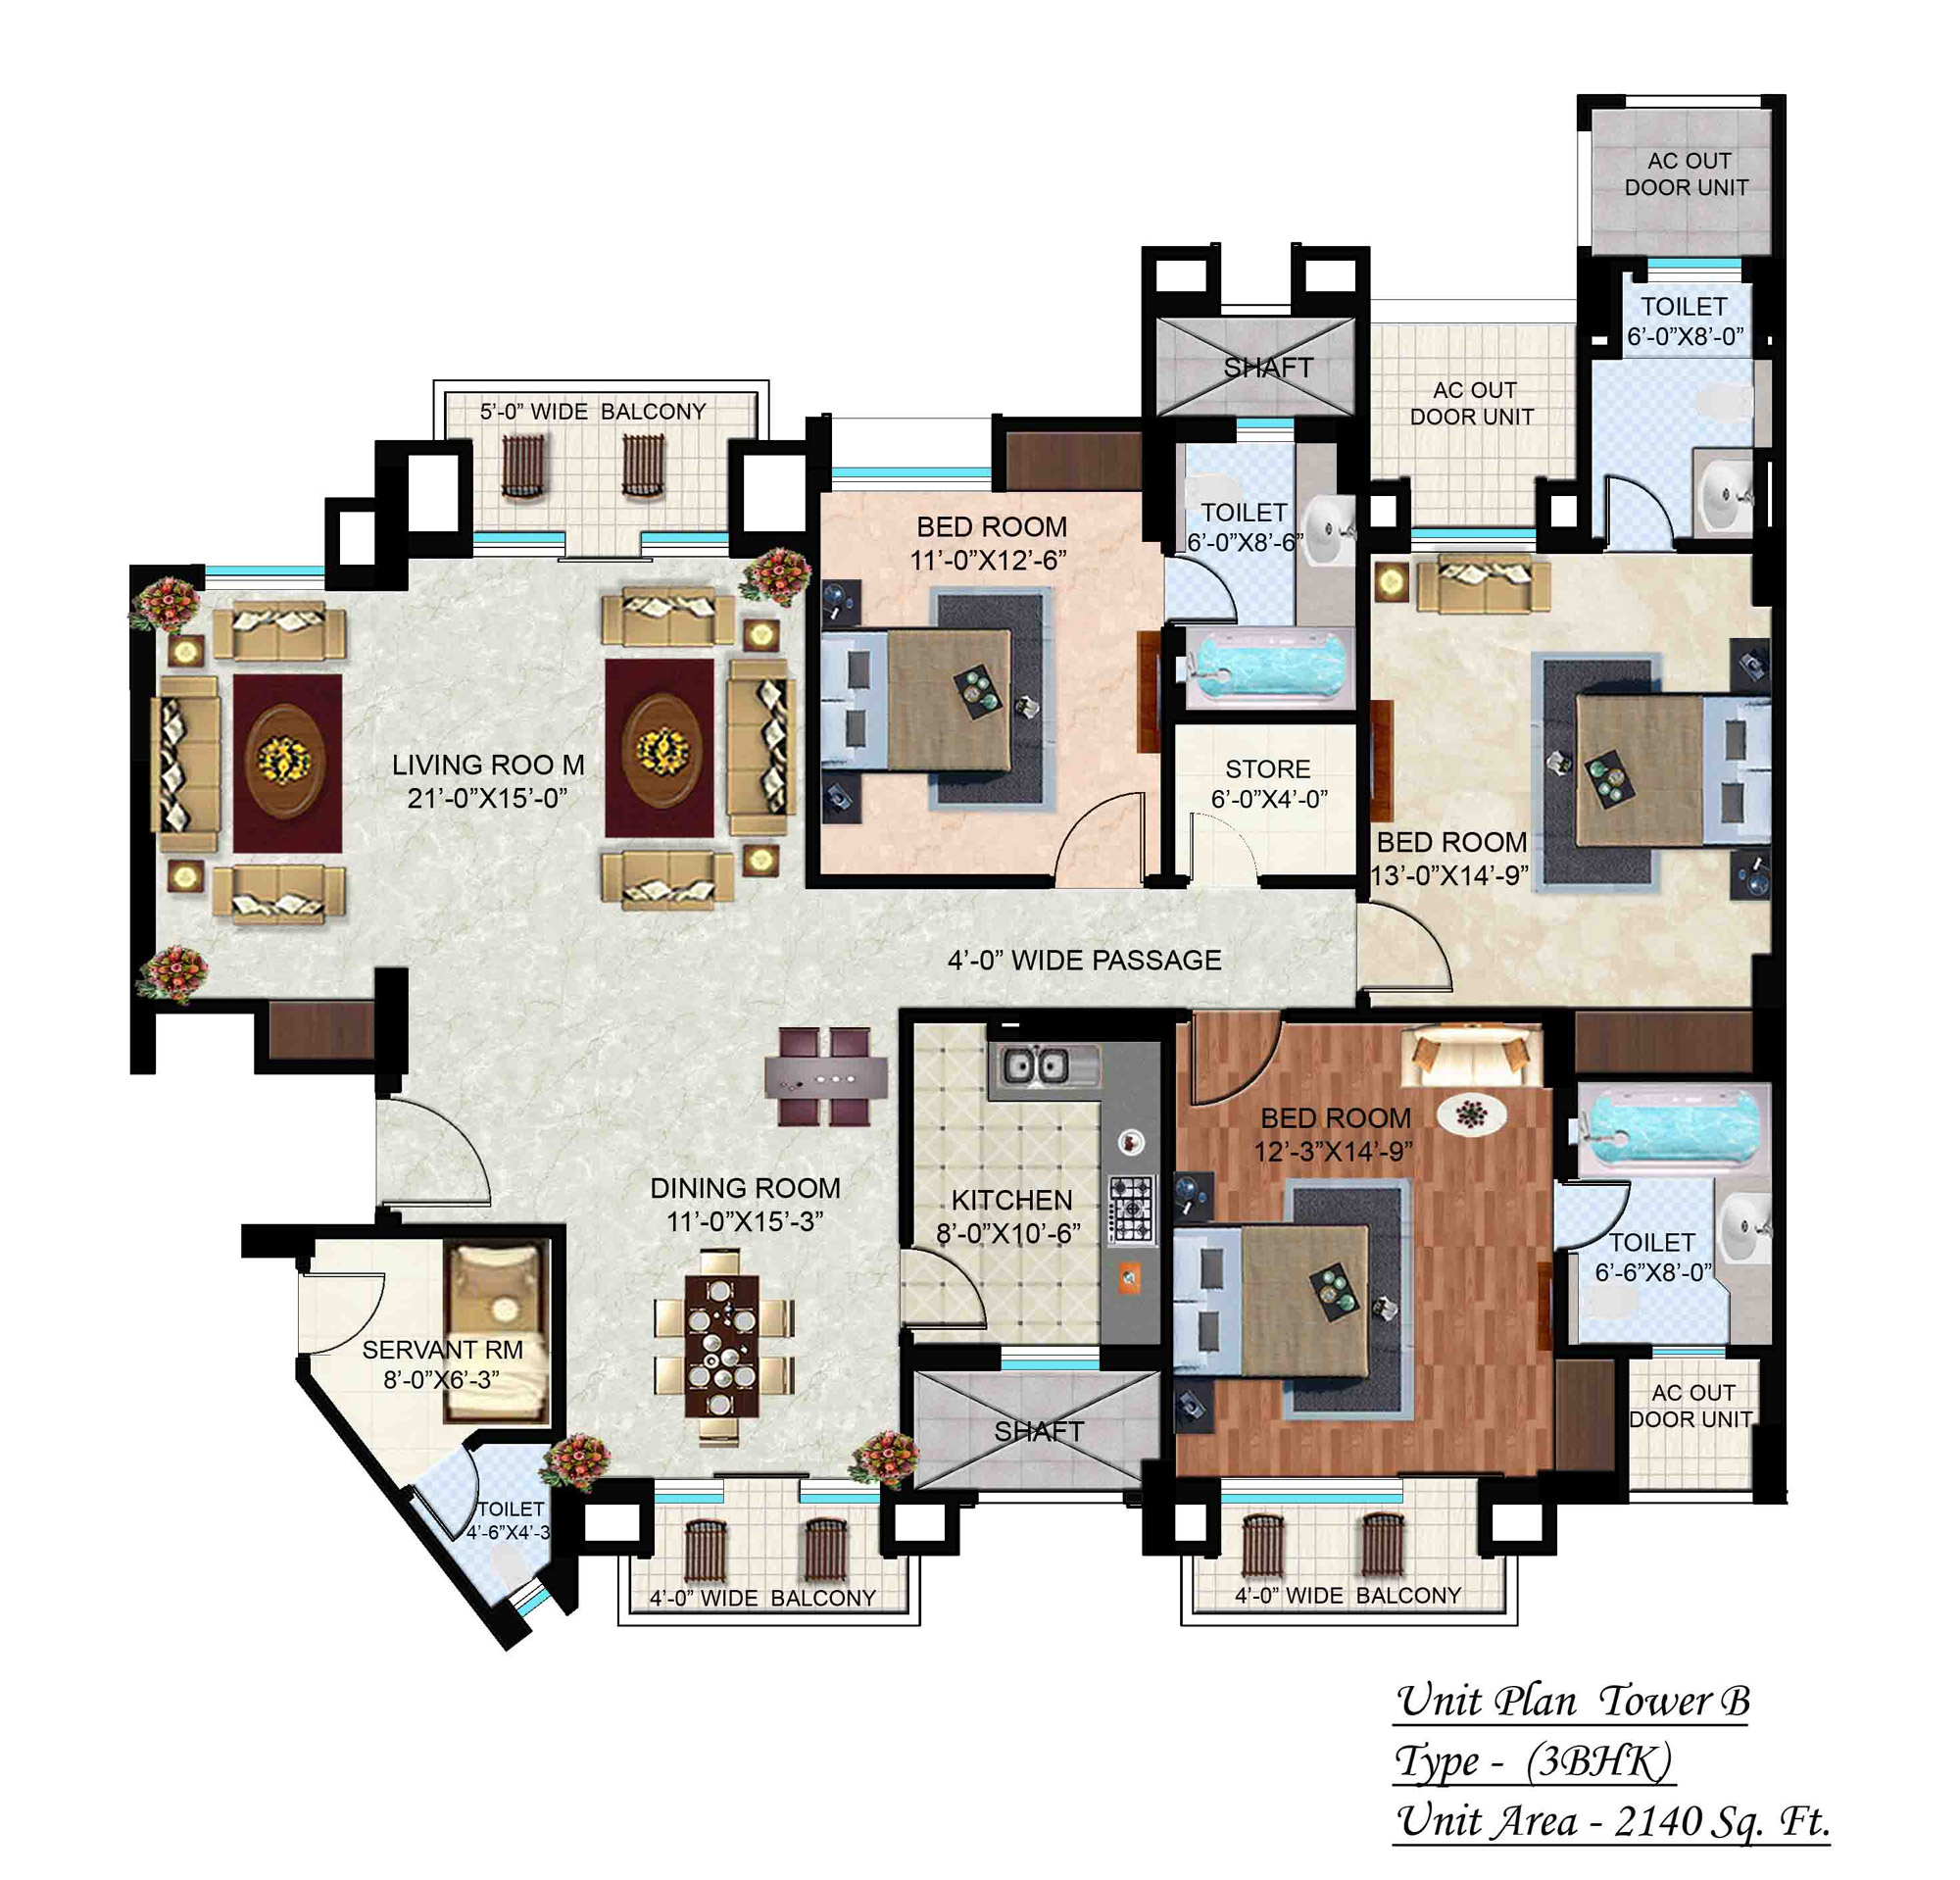 Цены юниты в туалет tower. Trident Grand Residence фото. Shri Radhei properties 9810945109 1.2.3 BHK Flats for rent. A-10 Rooms.